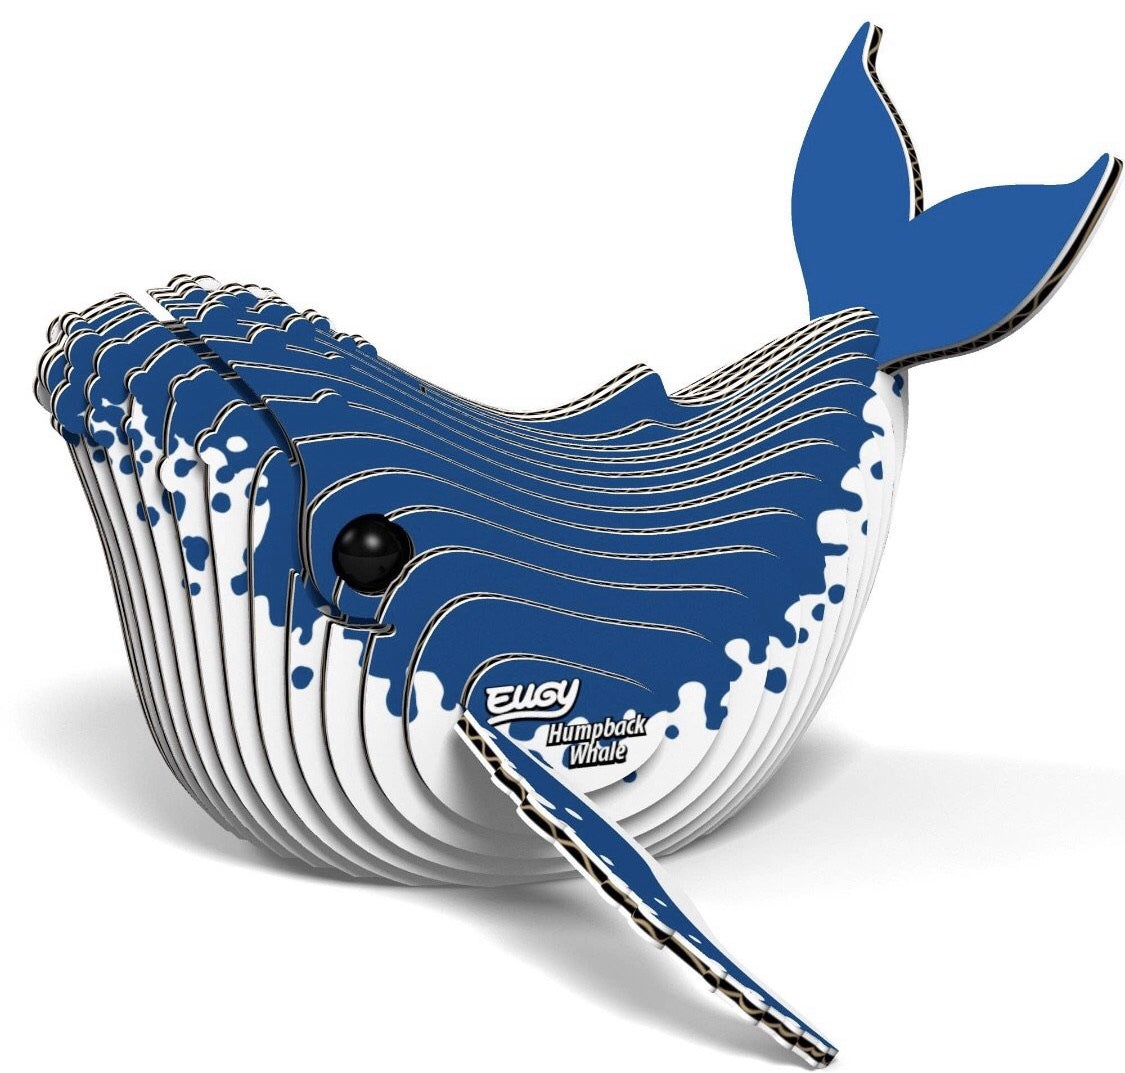 EUGY Humpback Whale 3D Puzzle